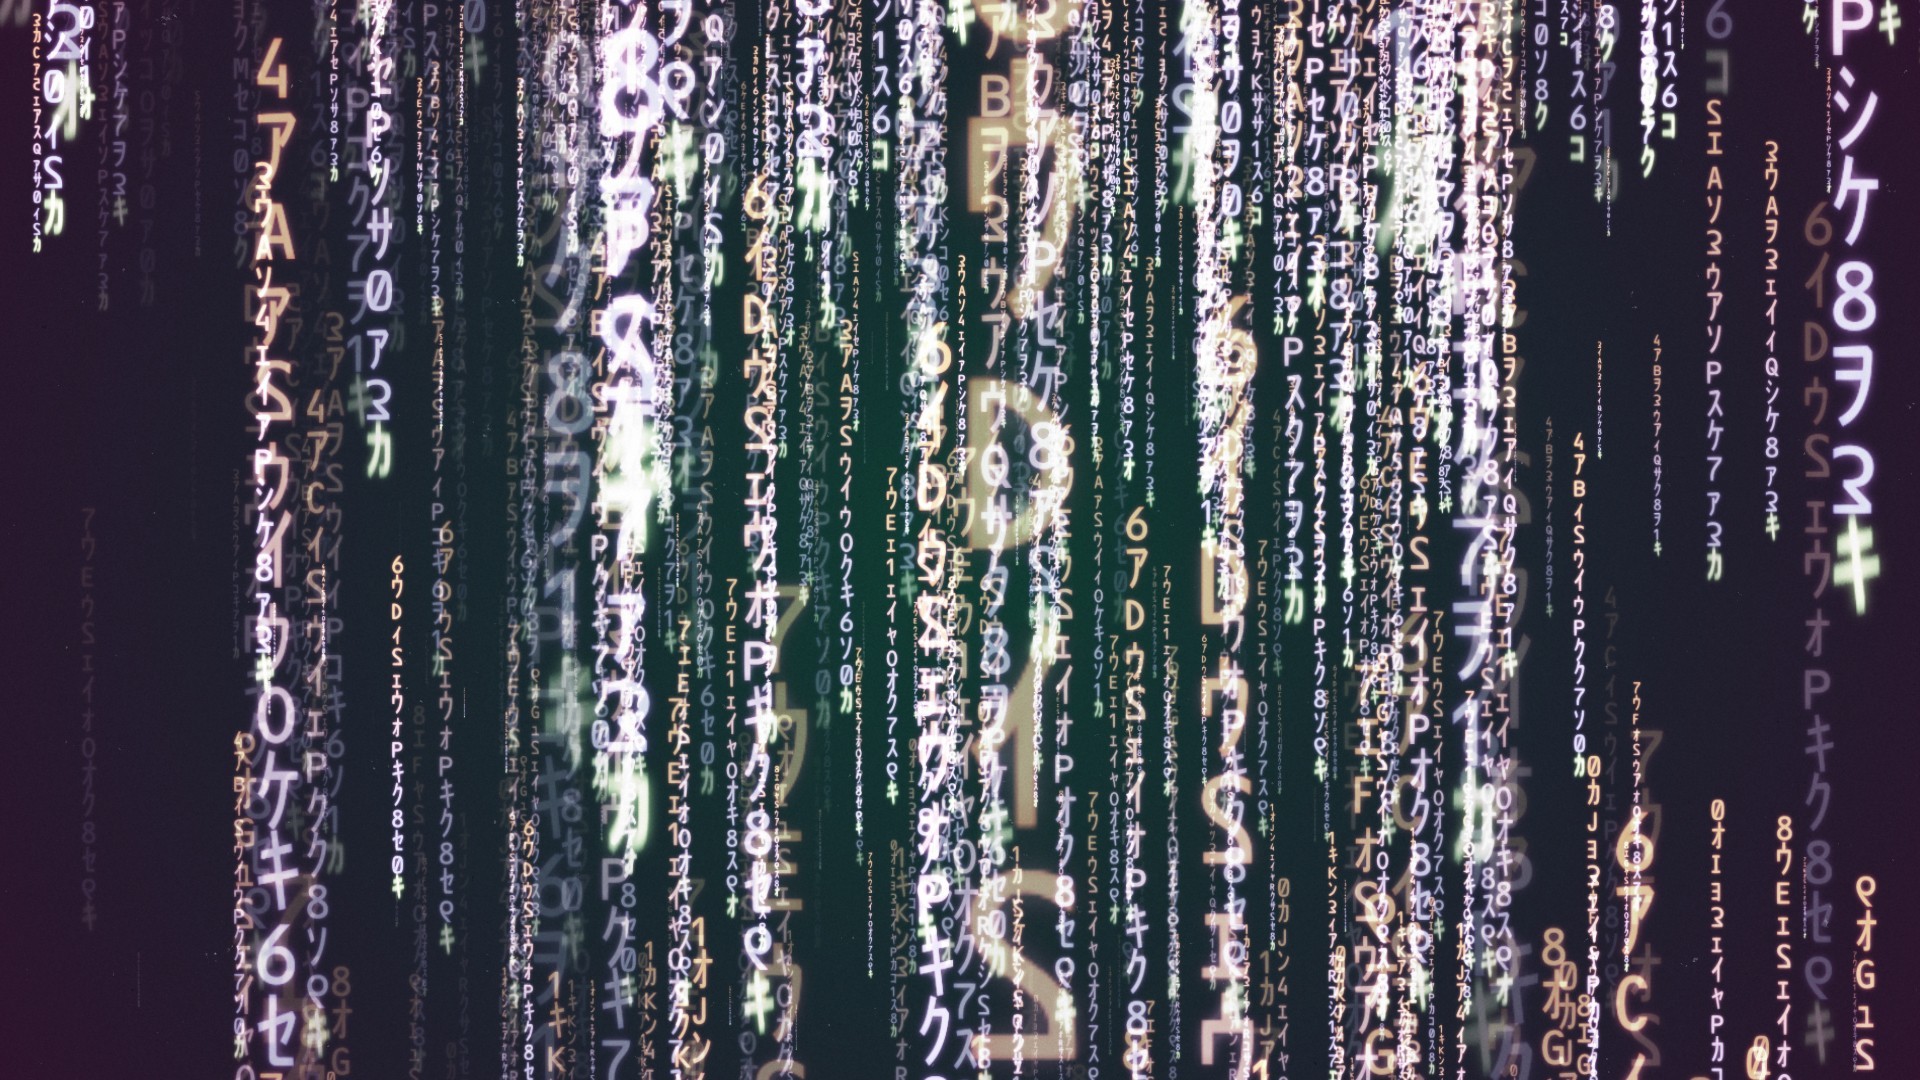 Matrix code wallpaper 16411